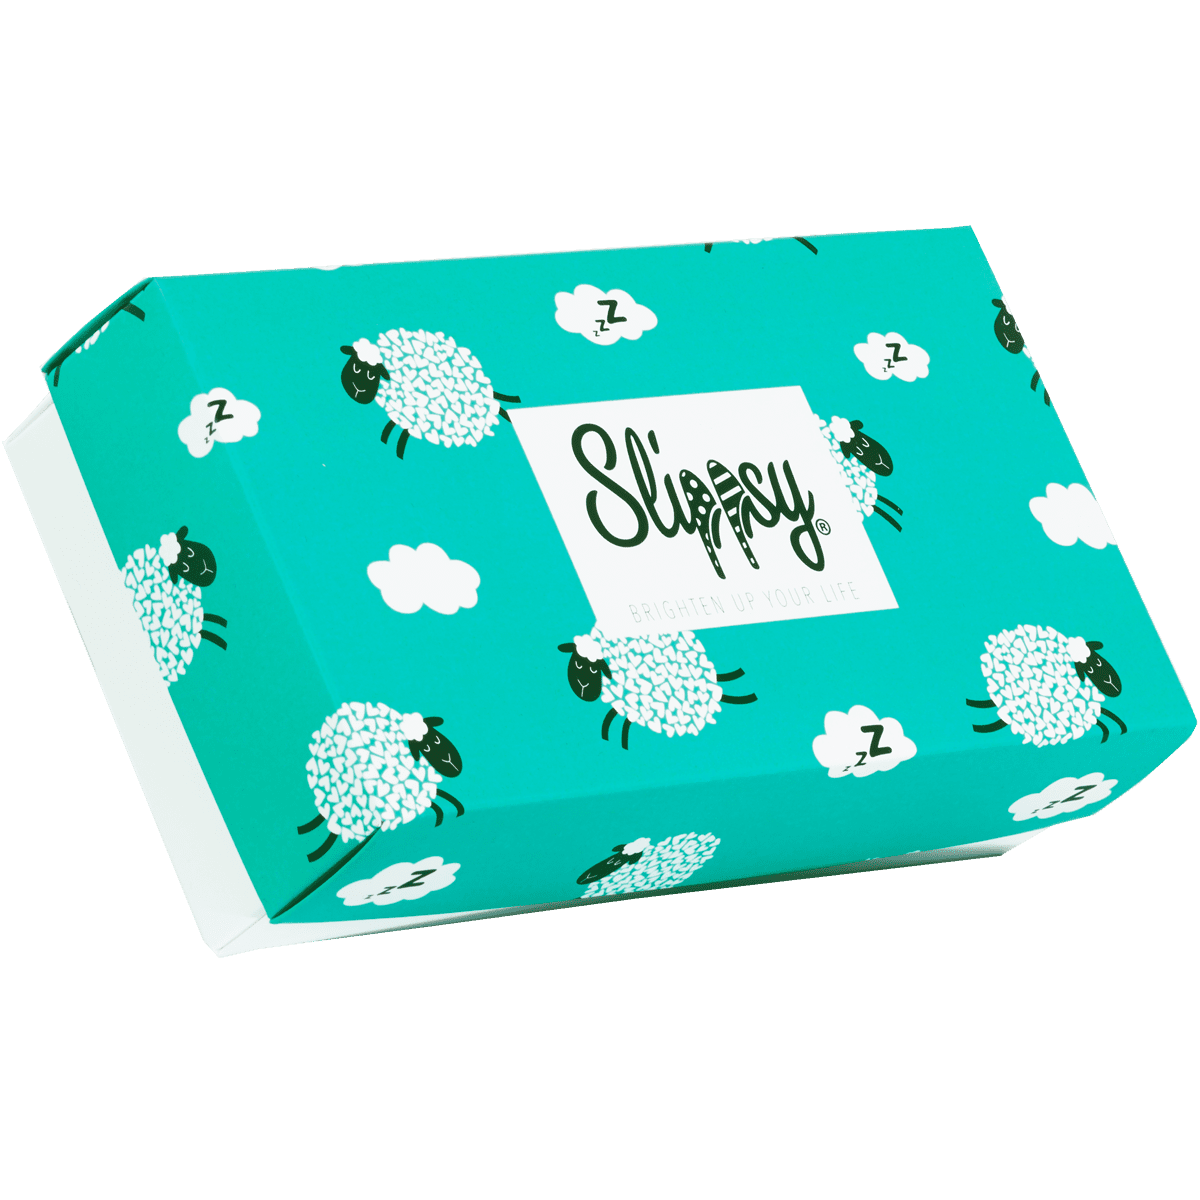 Slippsy Sheep box set